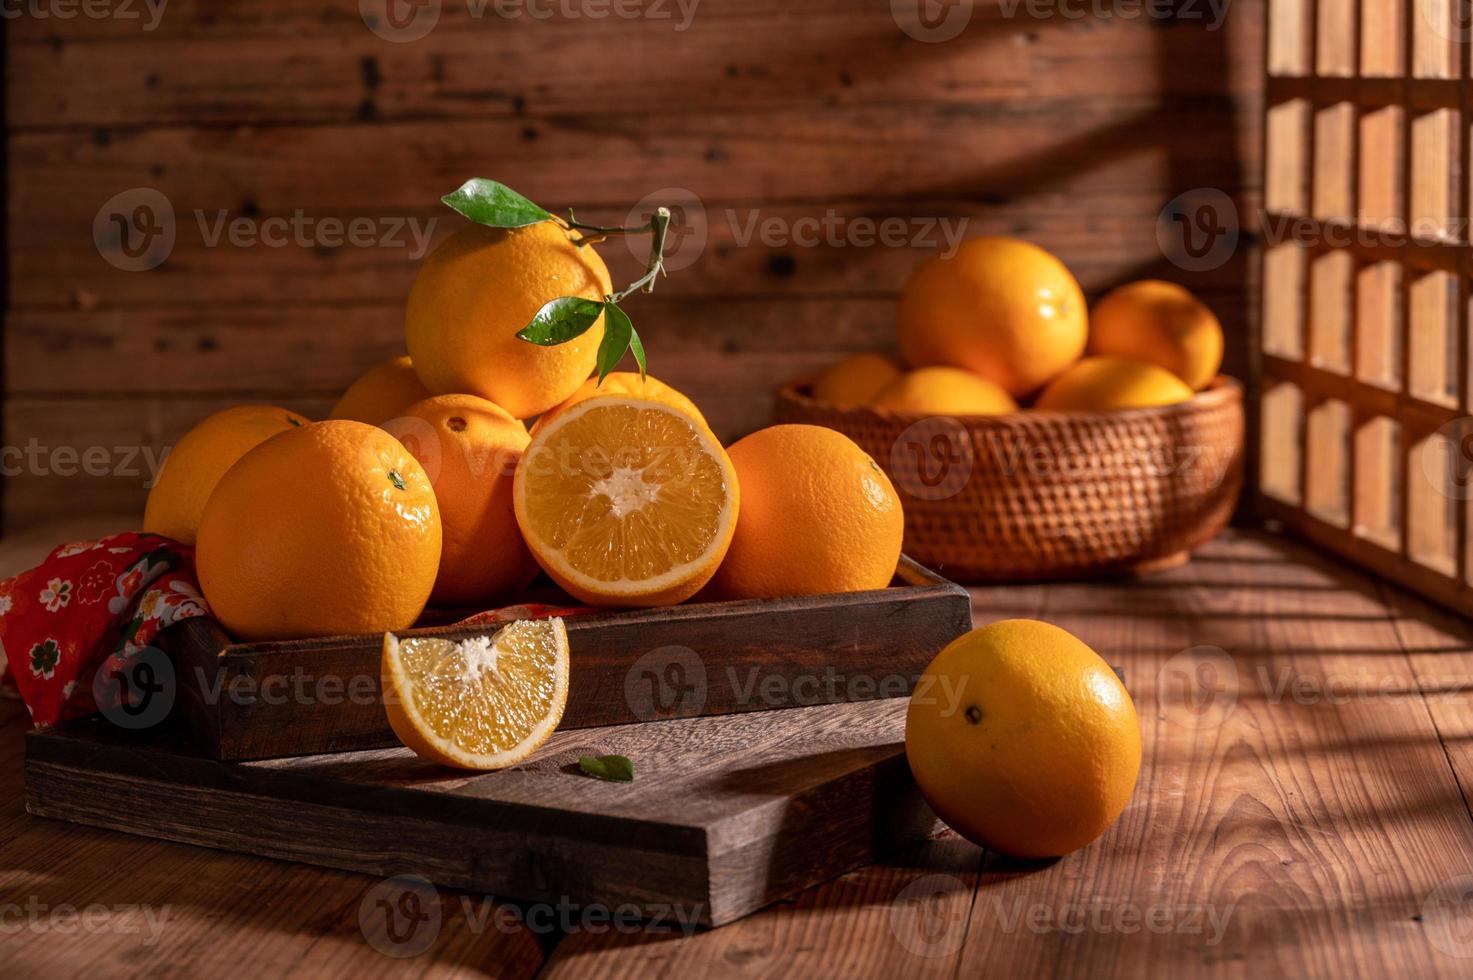 sous la pénombre, les oranges de l'assiette sont sur la table en bois, comme des peintures à l'huile photo